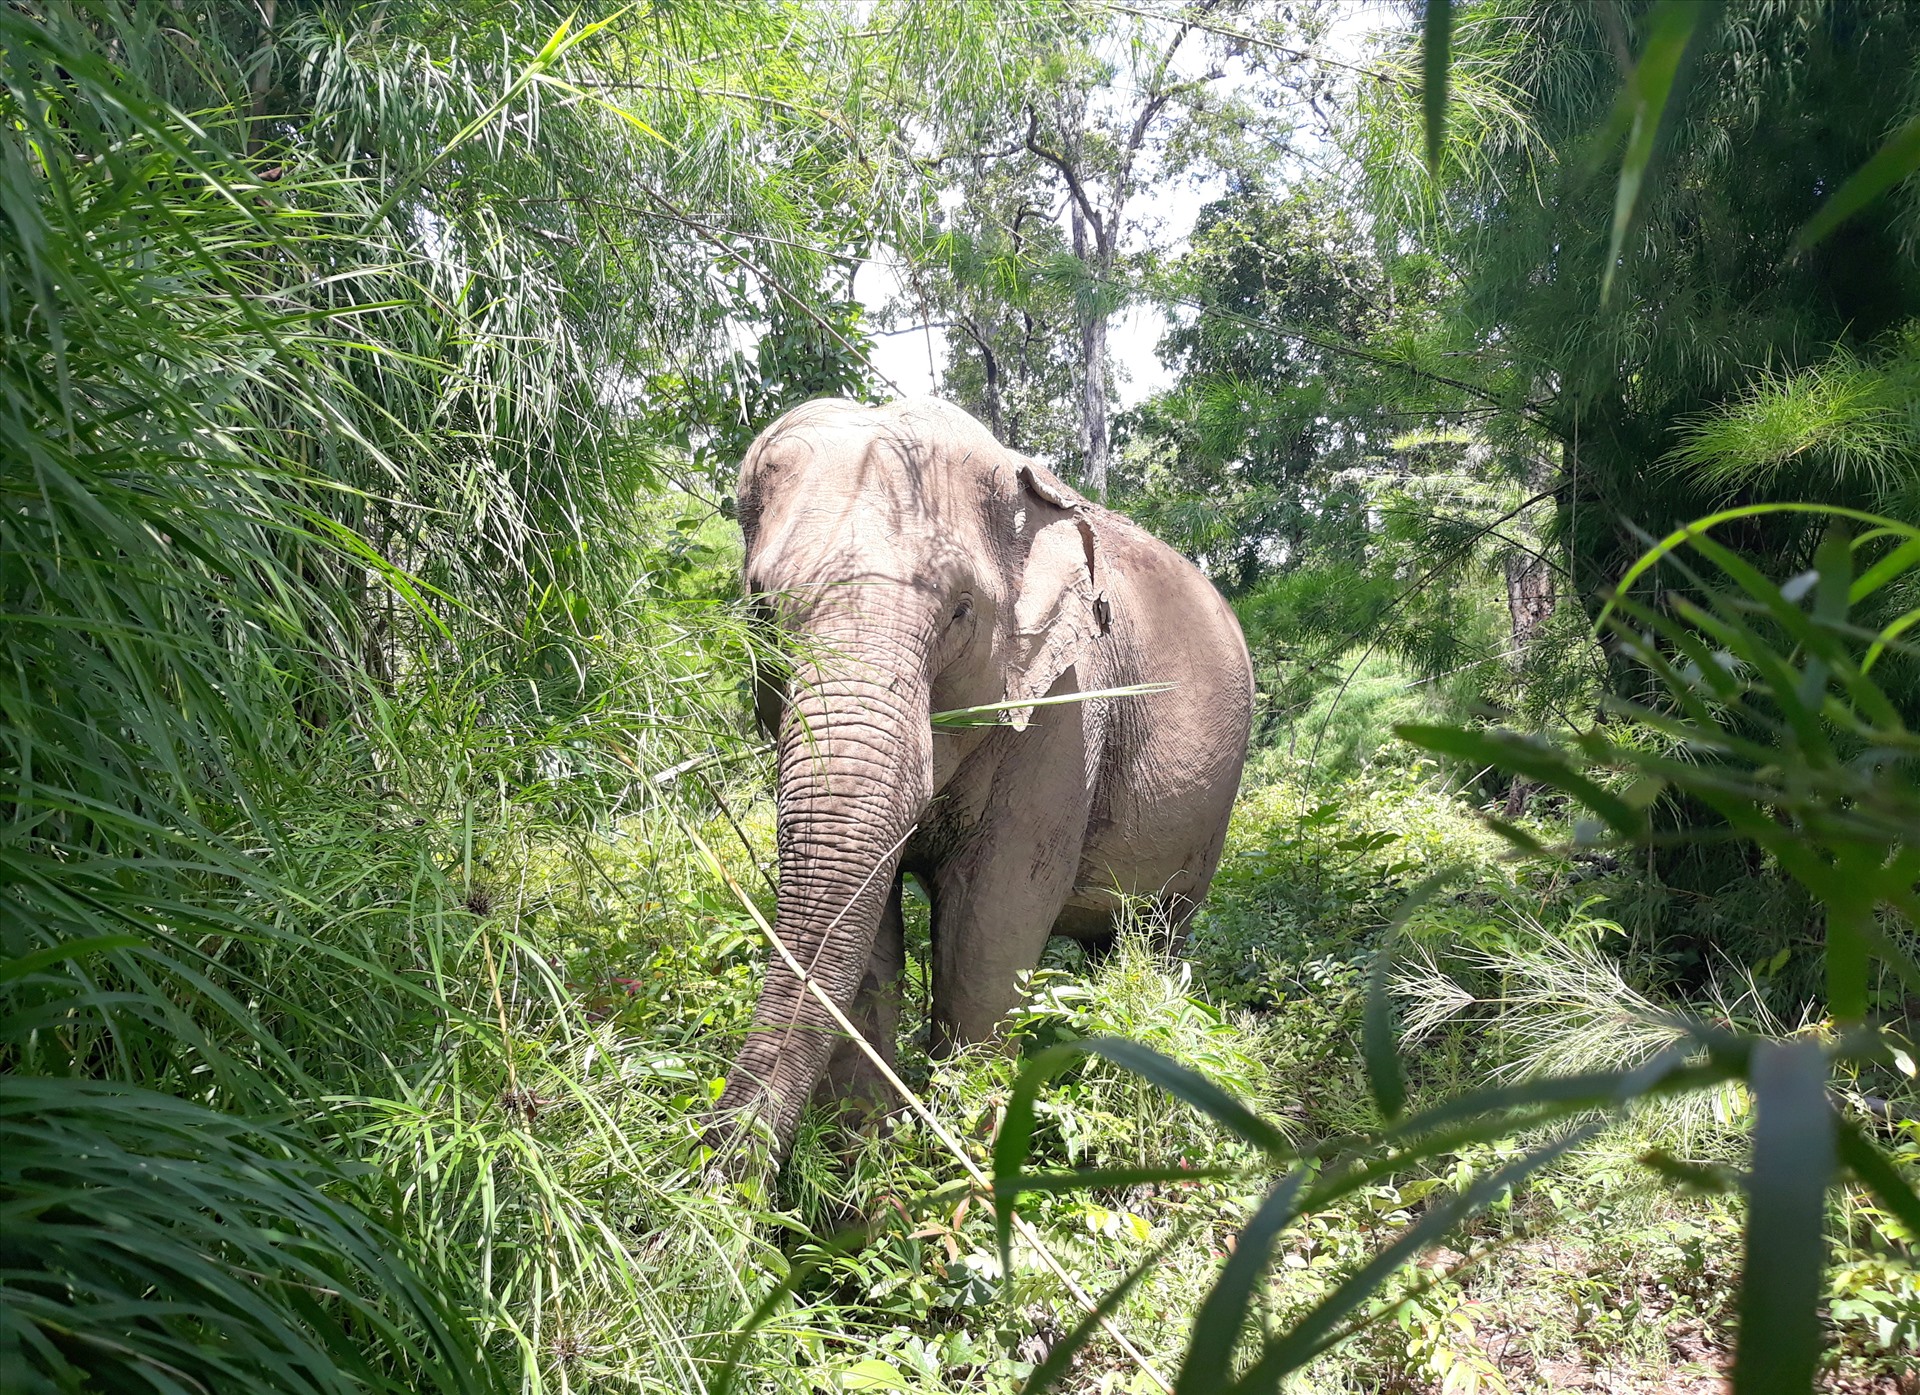 Theo Vườn quốc gia Yok Đôn, đến nay, đơn vị đã phối hợp với Tổ chức động vật châu Á thực hiện dự án cởi bỏ xiềng xích, trả lại bản năng tự nhiên cho voi nhà được 5 năm (giai đoạn 2018 - 2023).